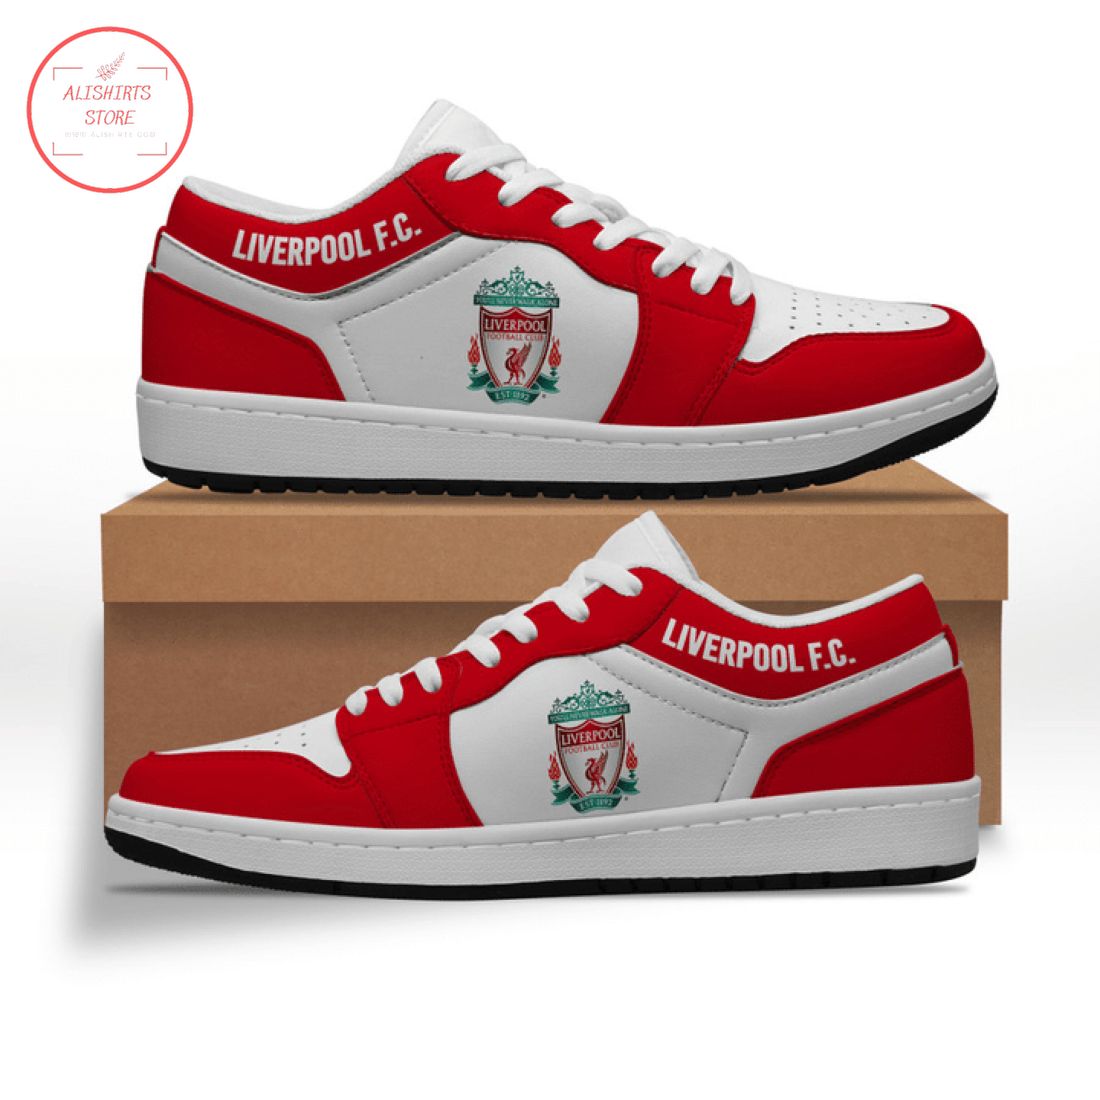 Liverpool FC Low Air Jordan 1 Sneakers